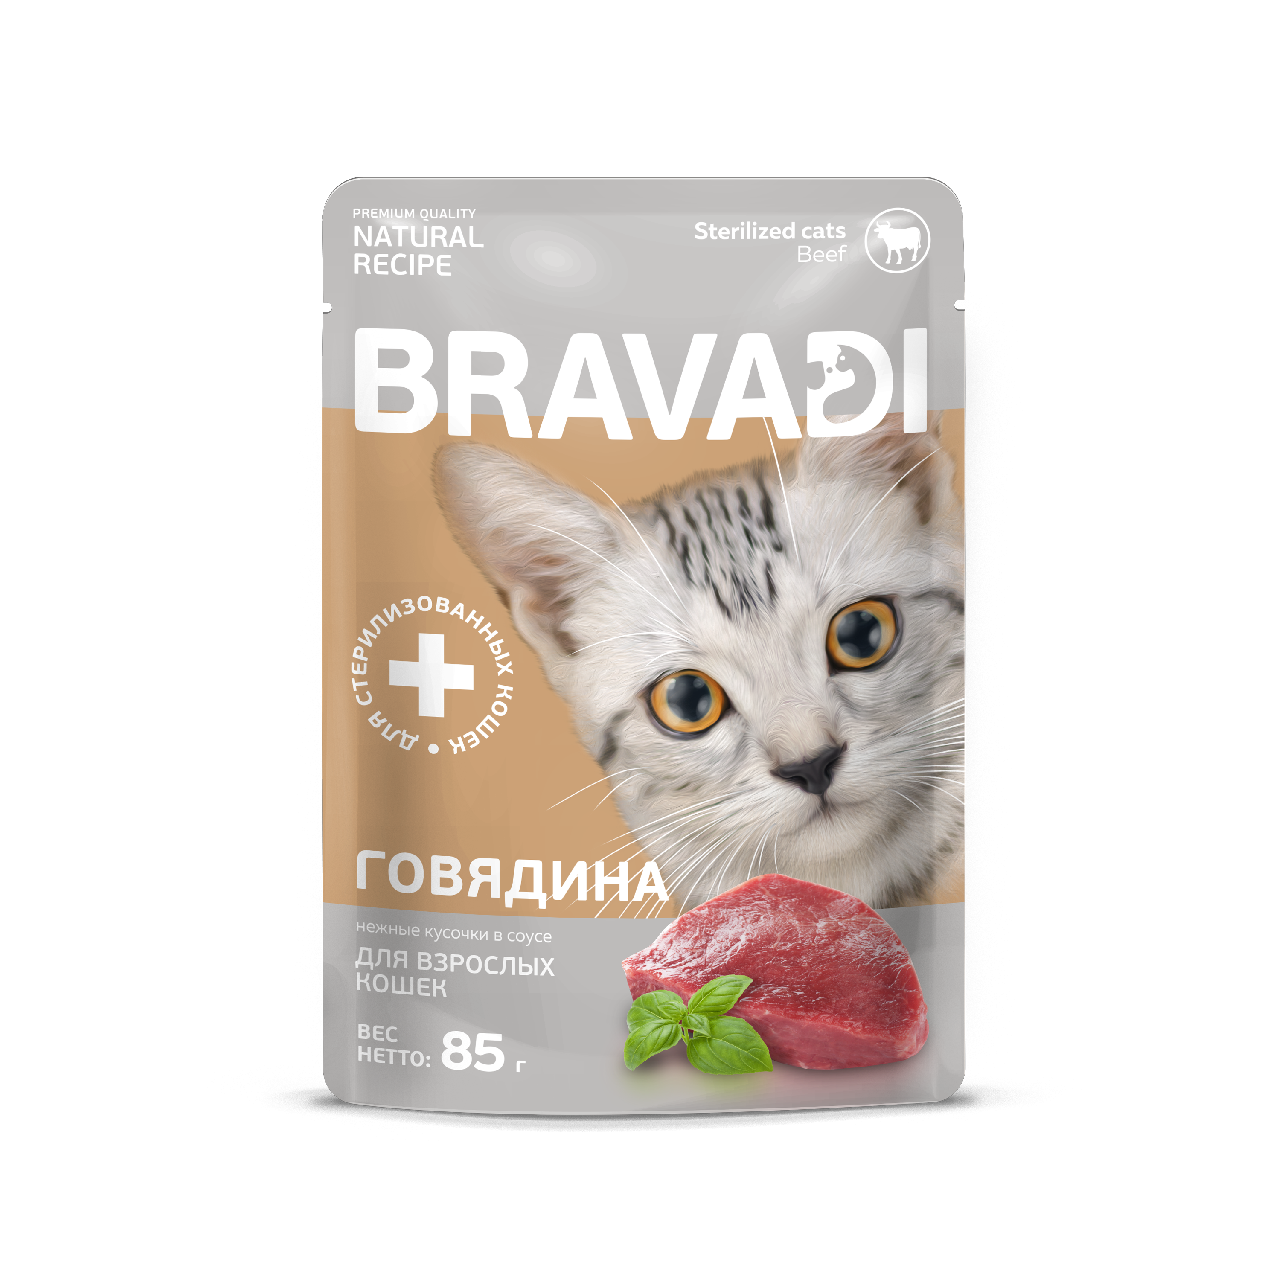 BRAVADI пауч нежные кусочки с говядиной в соусе для стерилизованных кошек 85г